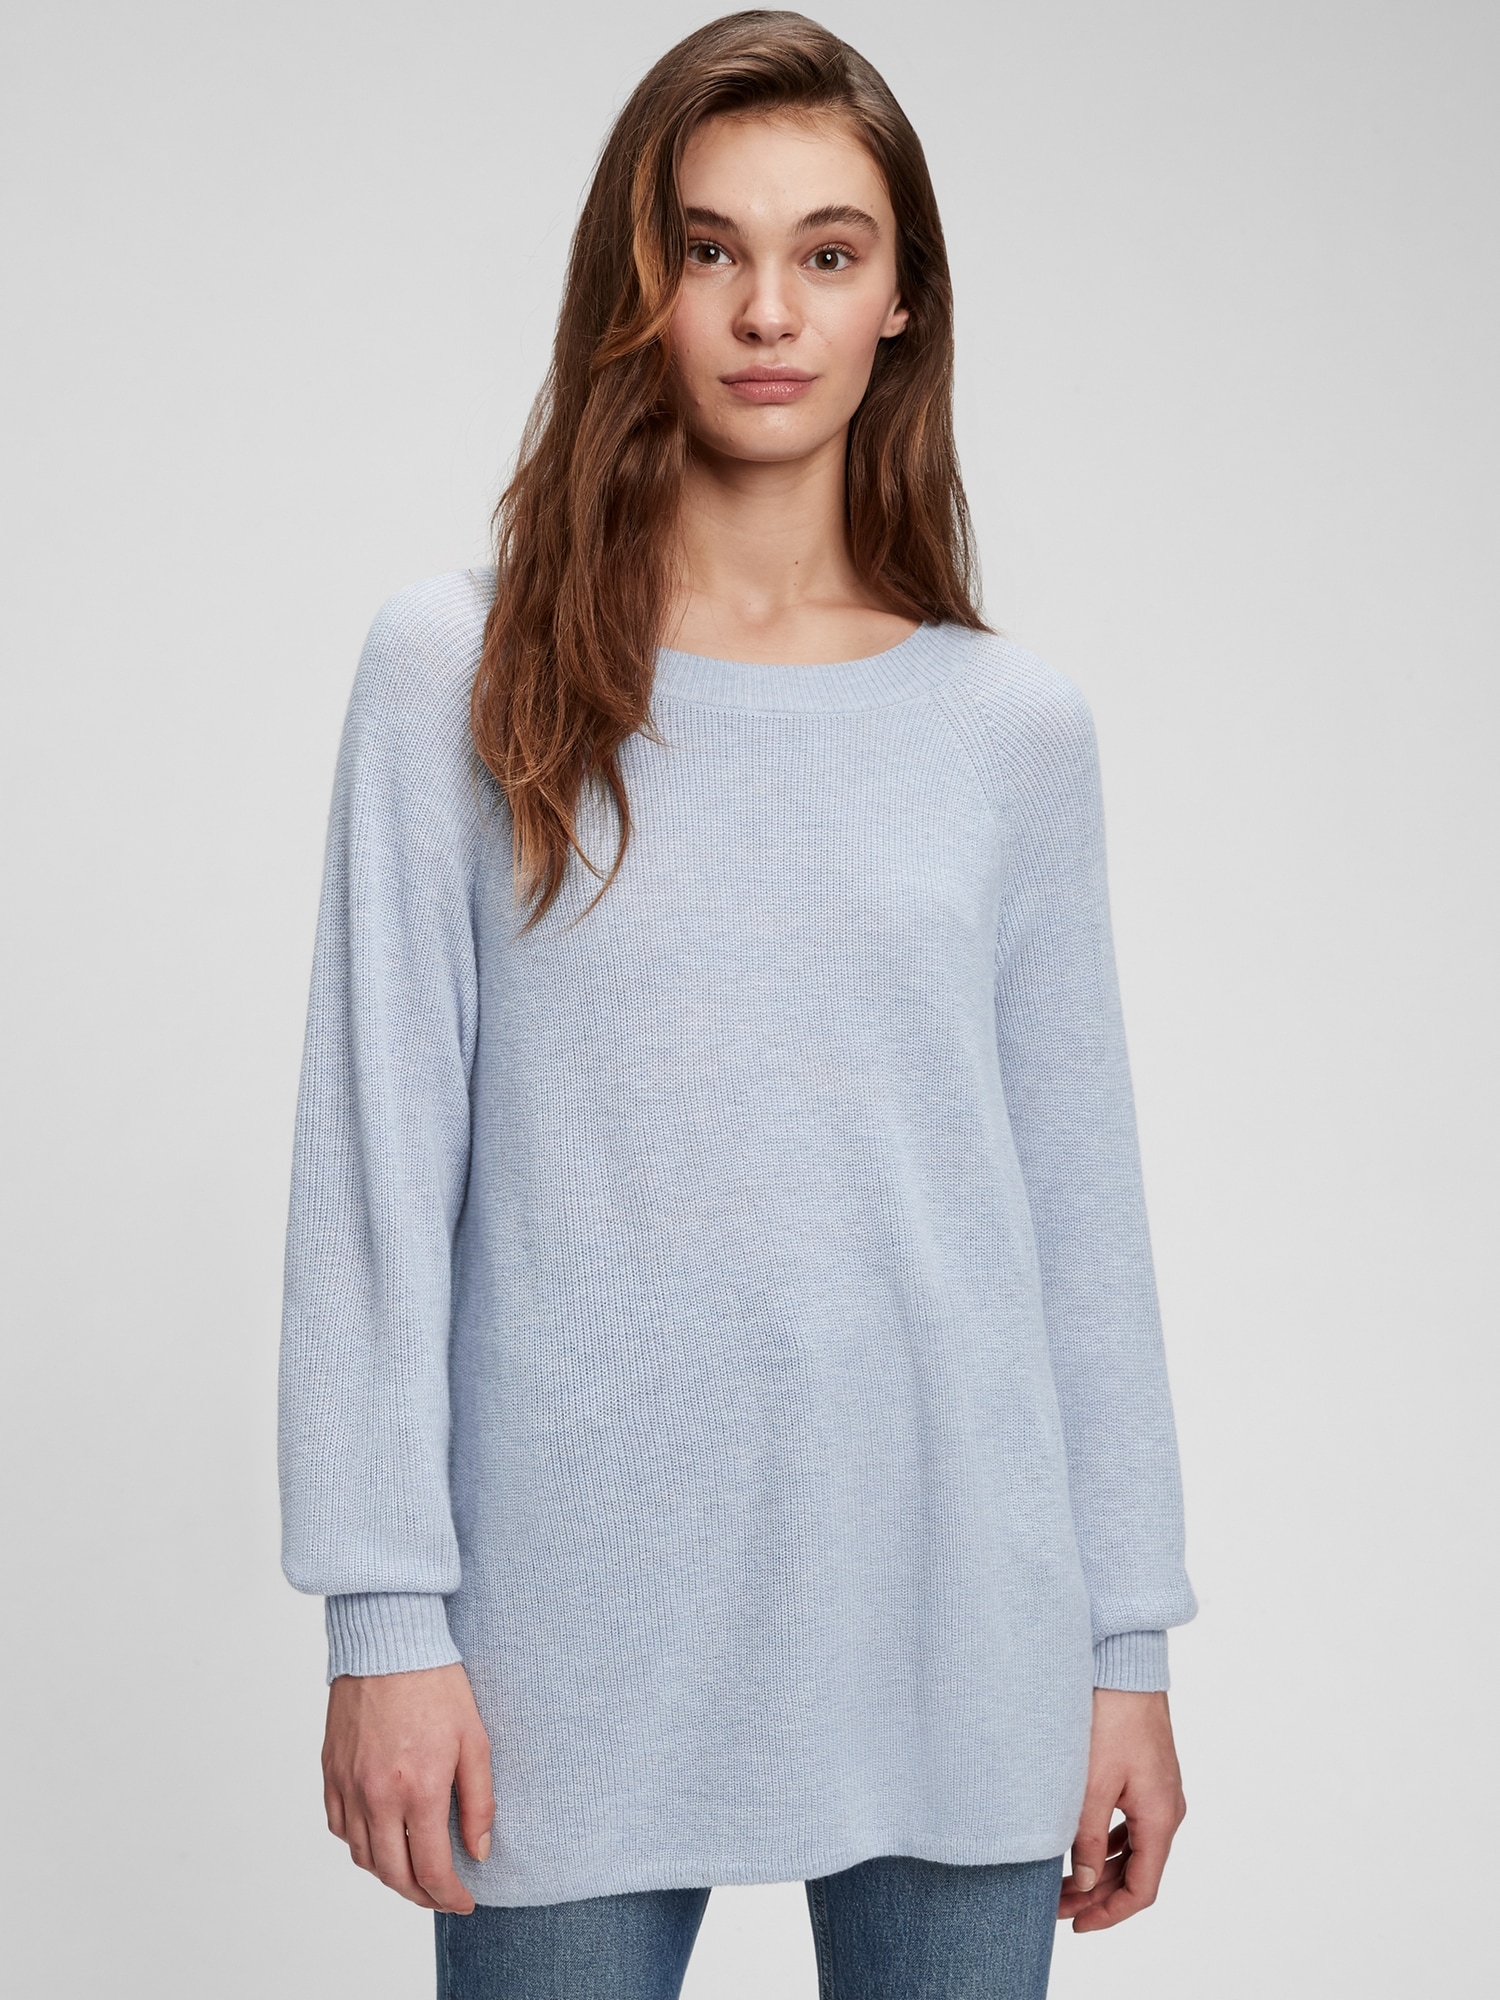 Eversoft Tunic Sweater | Gap